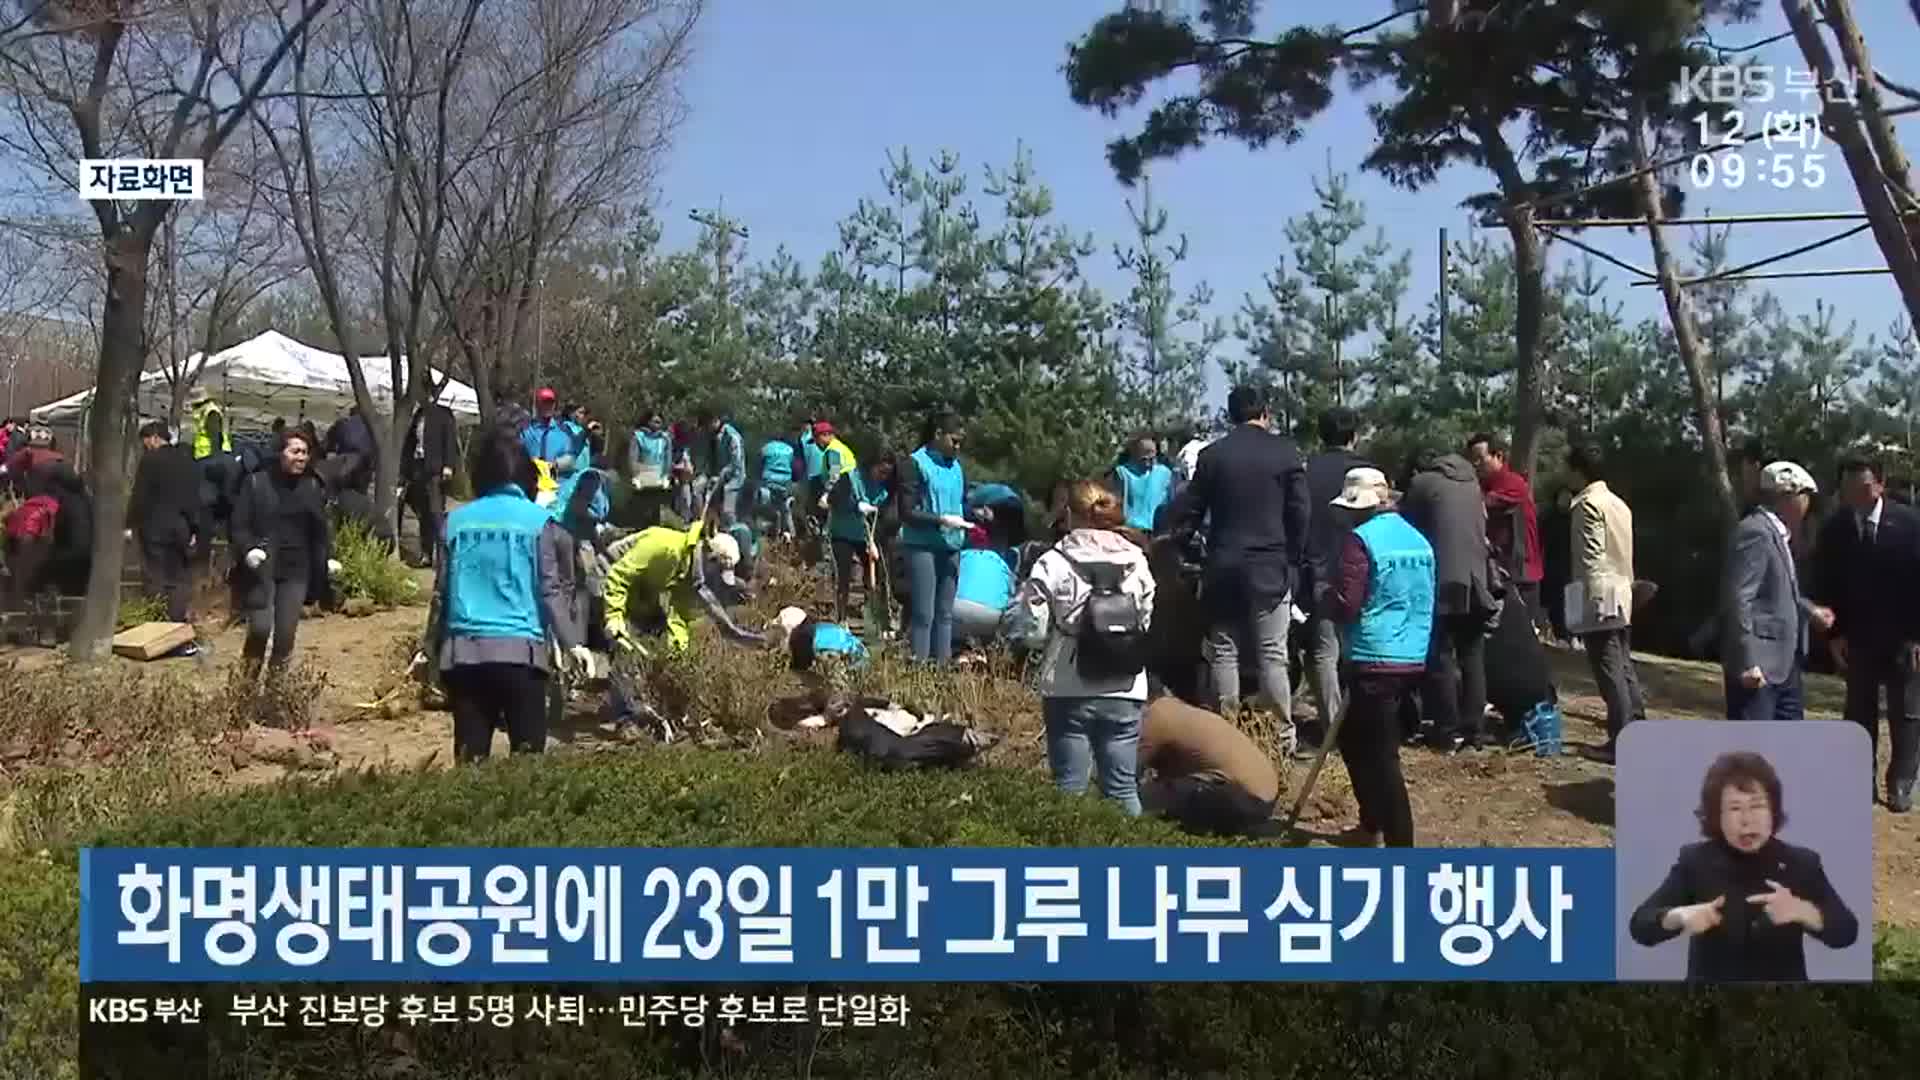 화명생태공원에 23일 1만 그루 나무 심기 행사